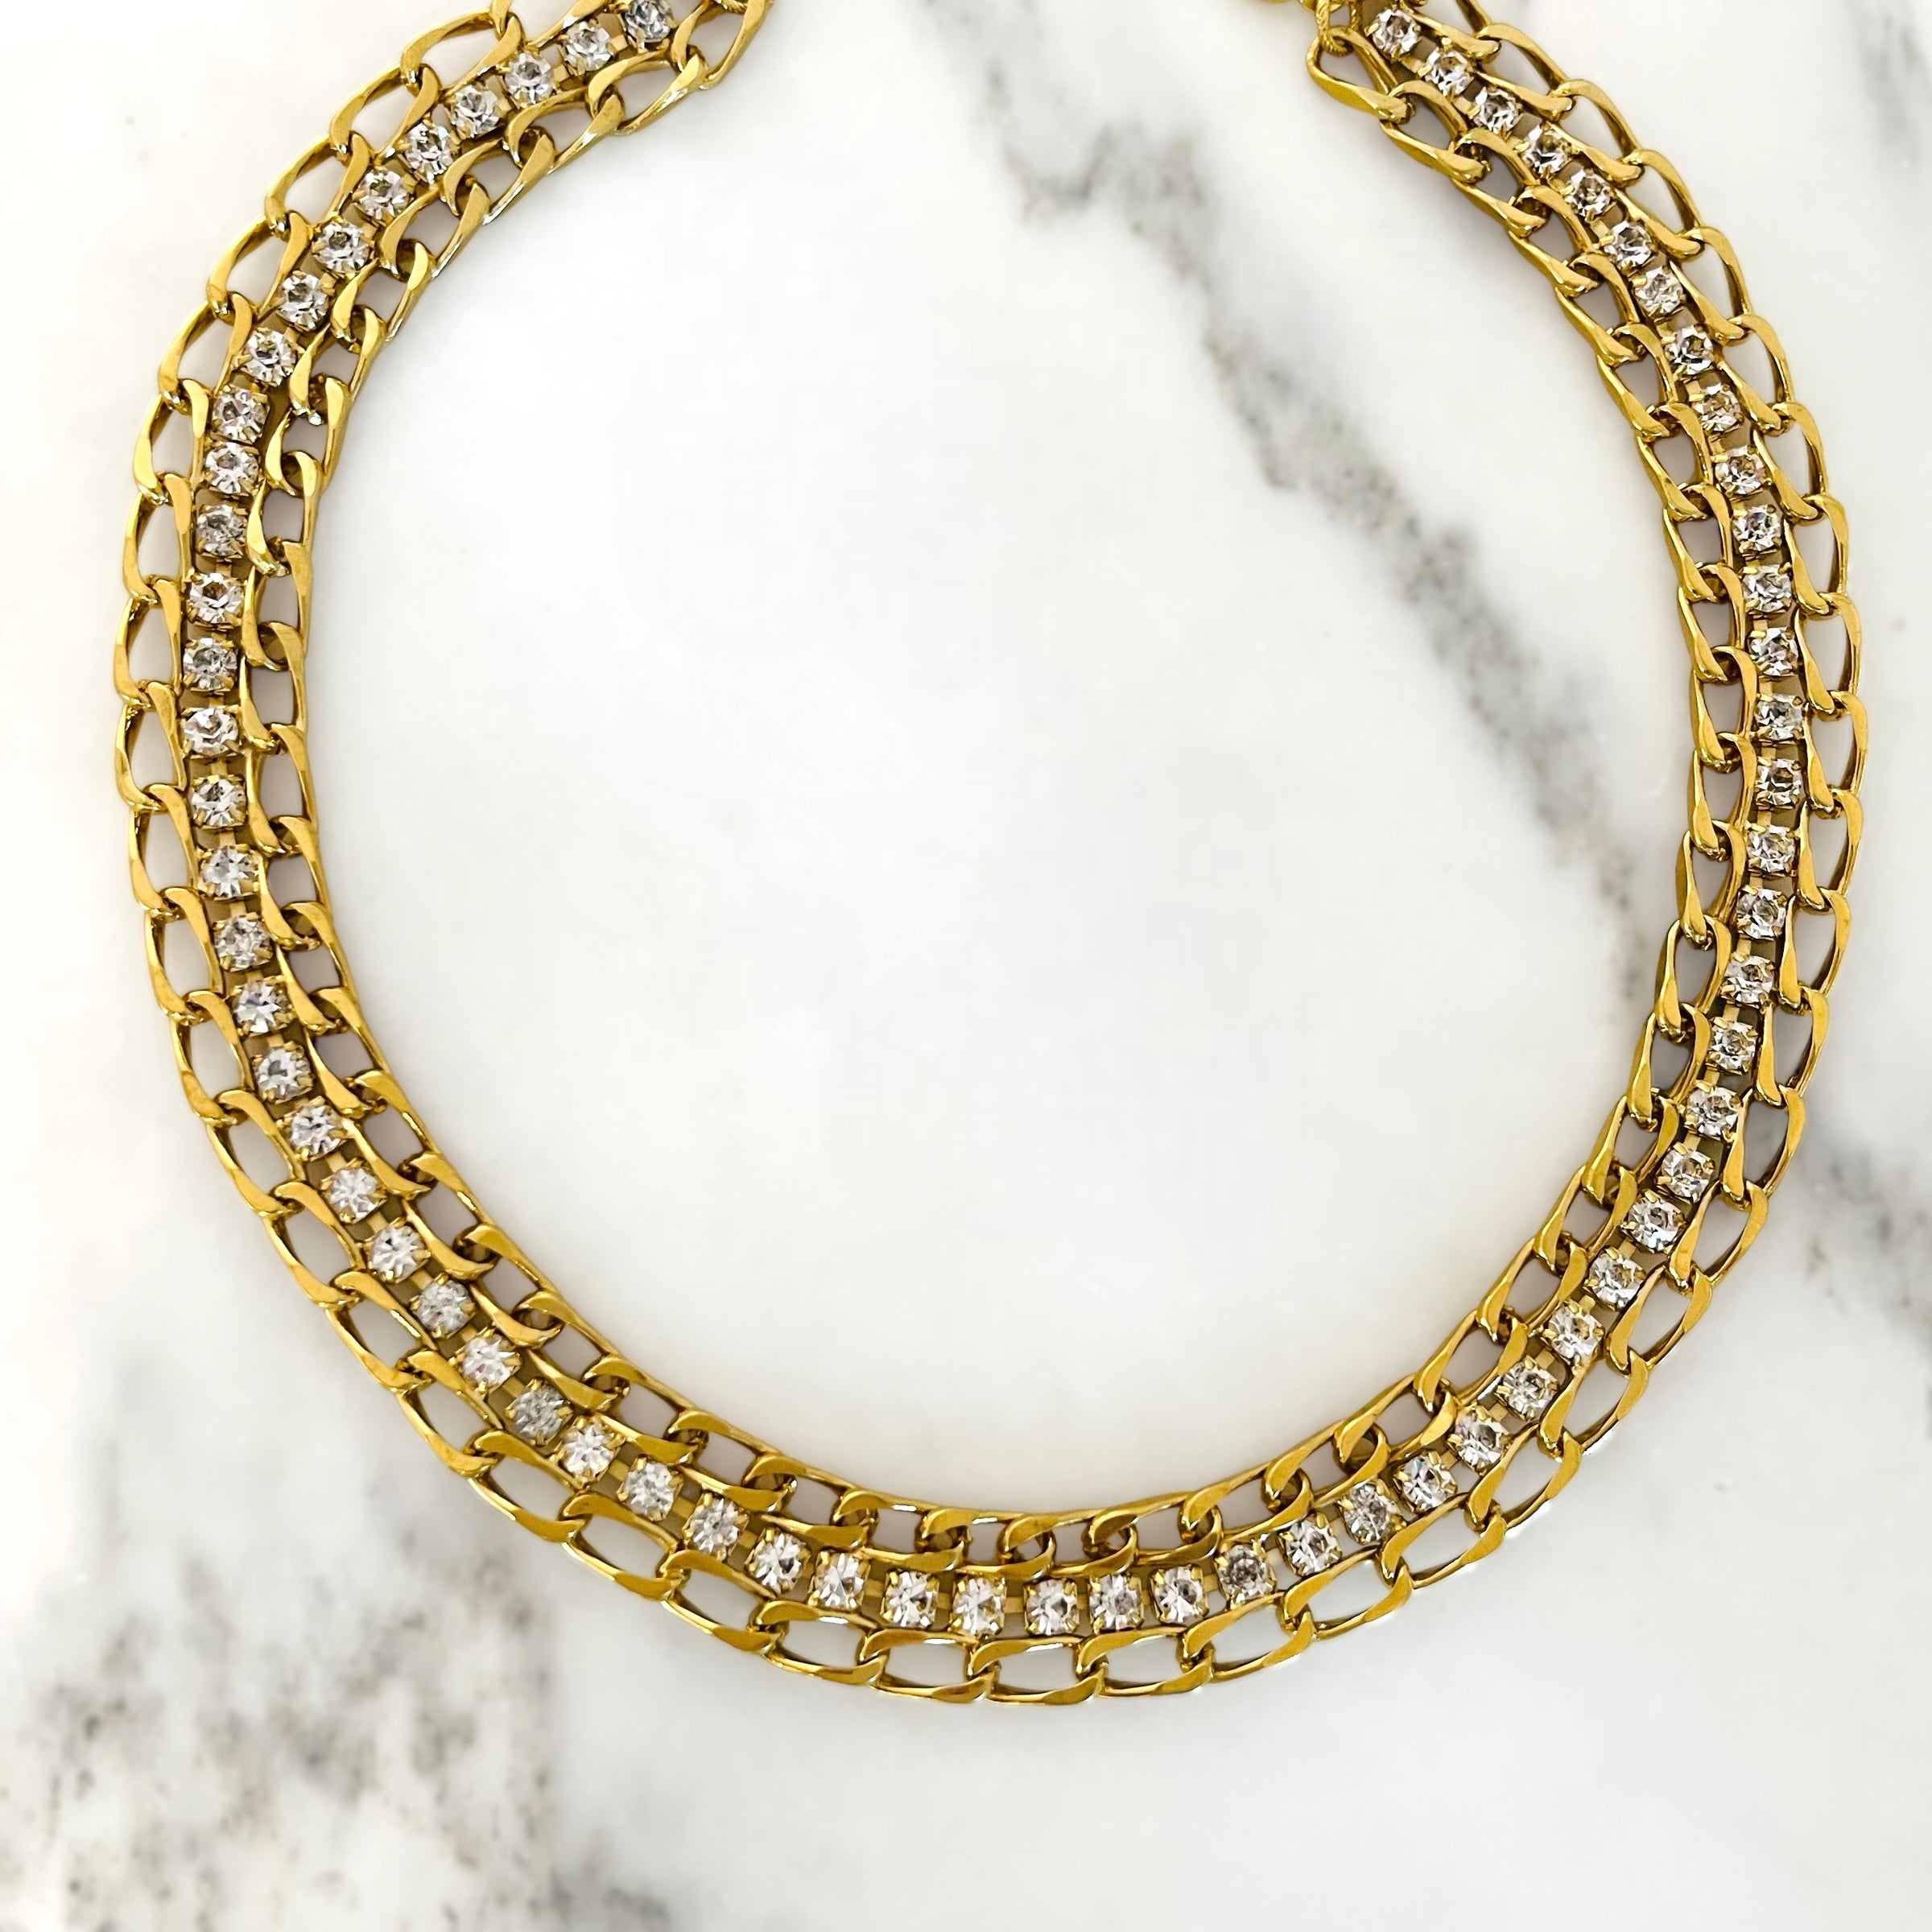 Gold Monet Choker // Necklace